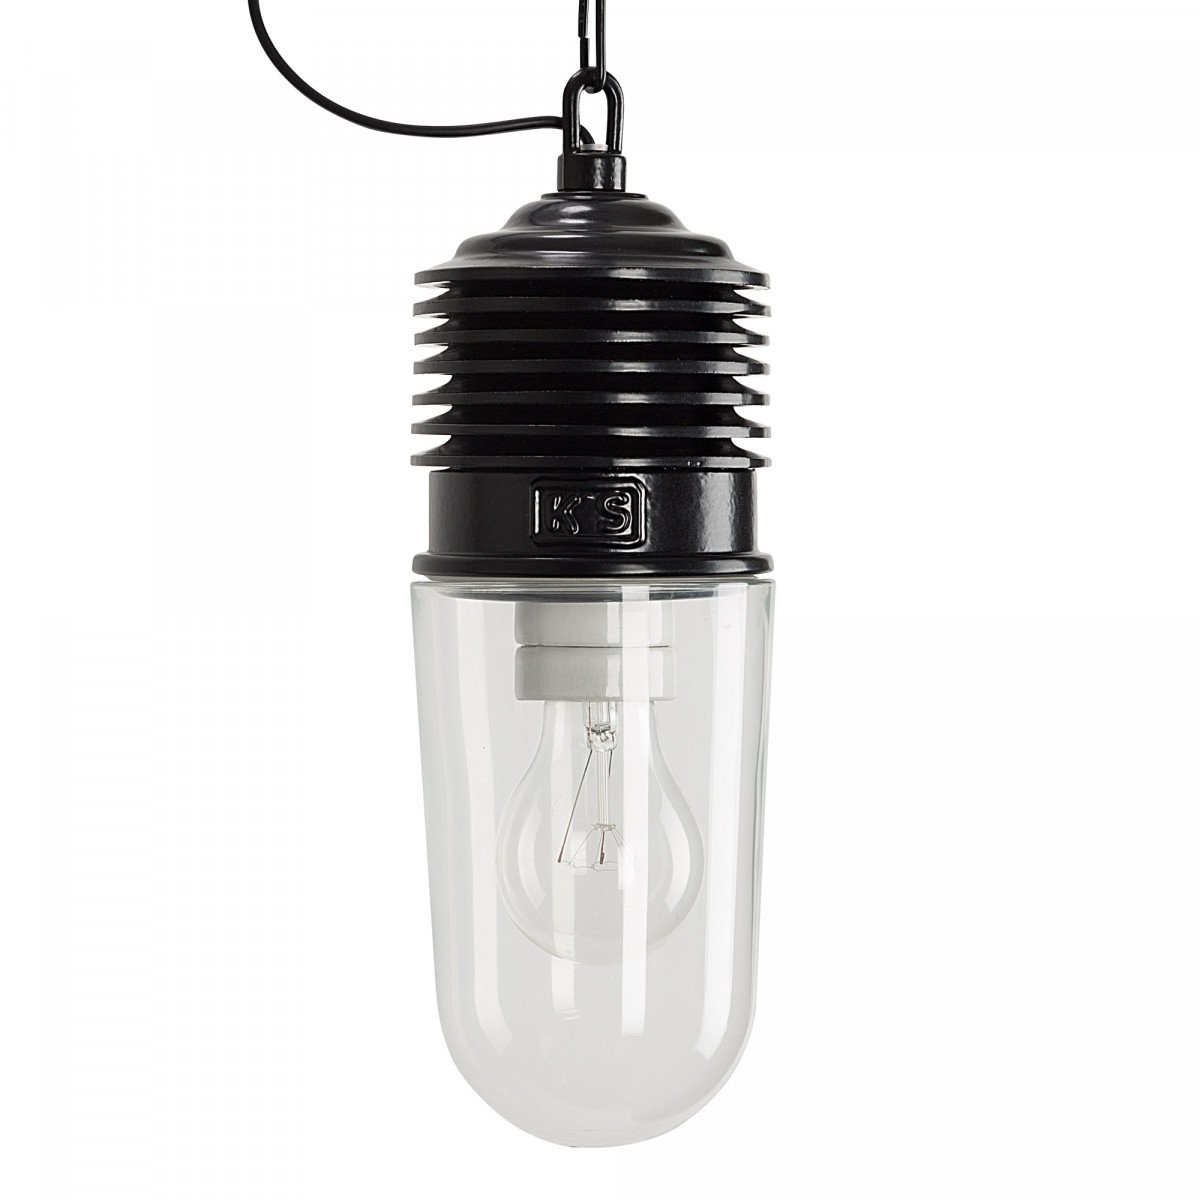 Lampe suspendue Genius noire (6500d4) - éclairage Industriel de KS | Nostalux.fr